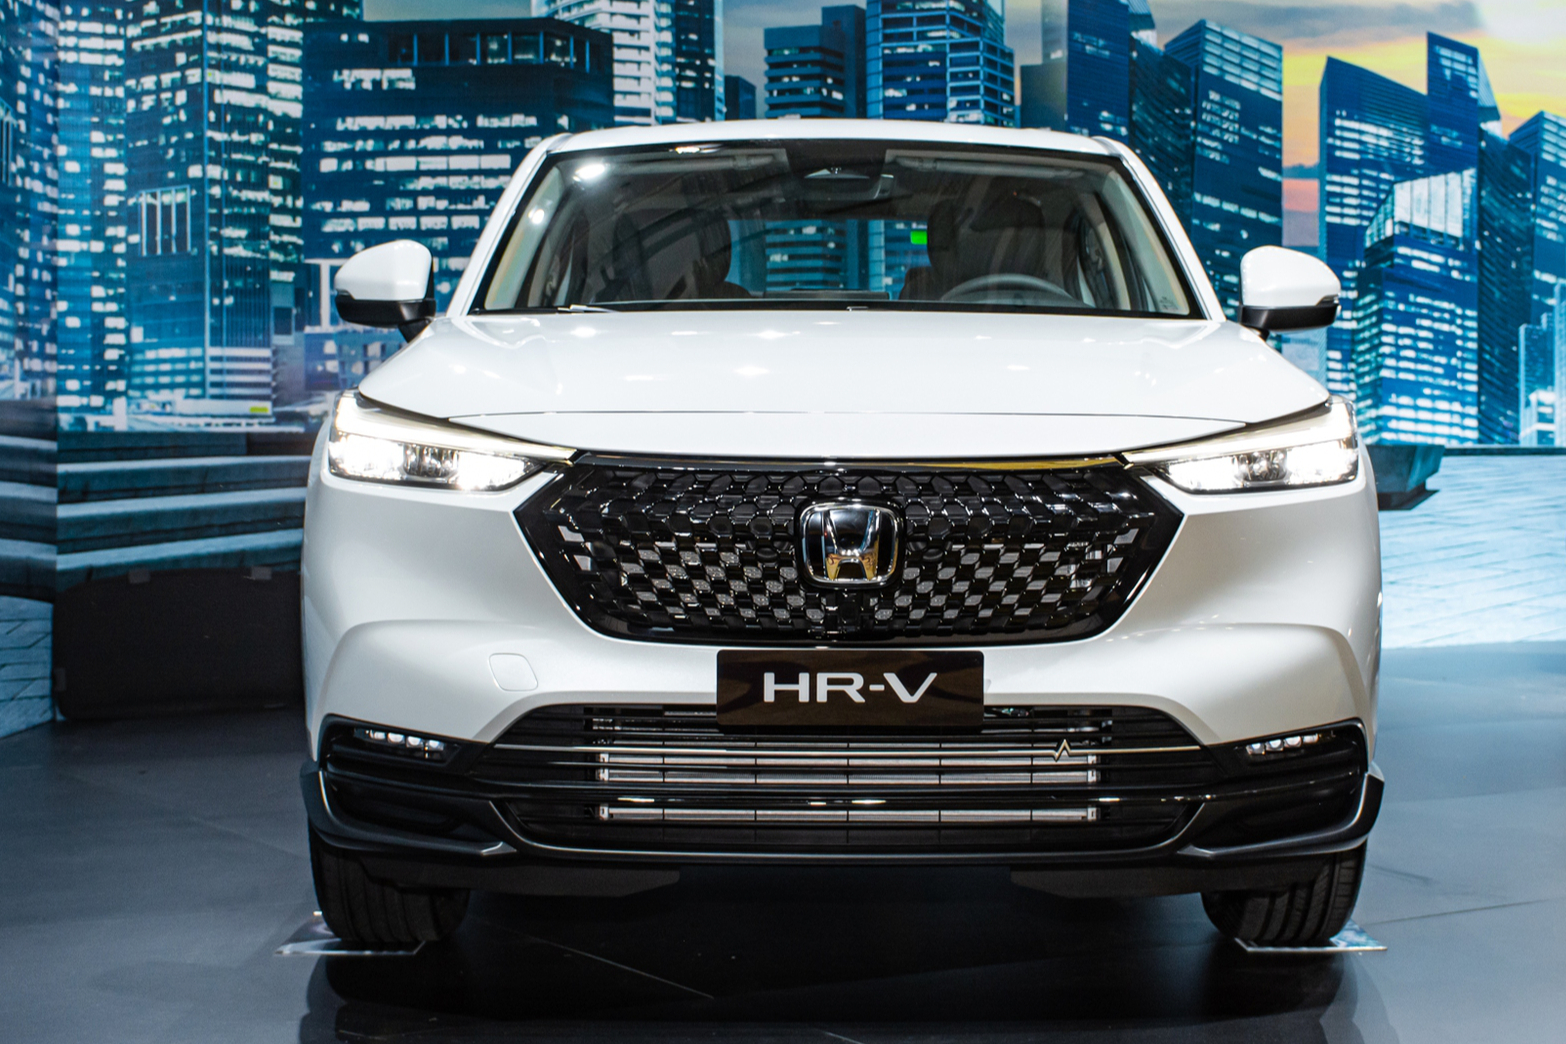 Honda ra mắt SUV cỡ nhỏ HRV tại Thái Lan giá từ 579 triệu đồng CafeAutoVn